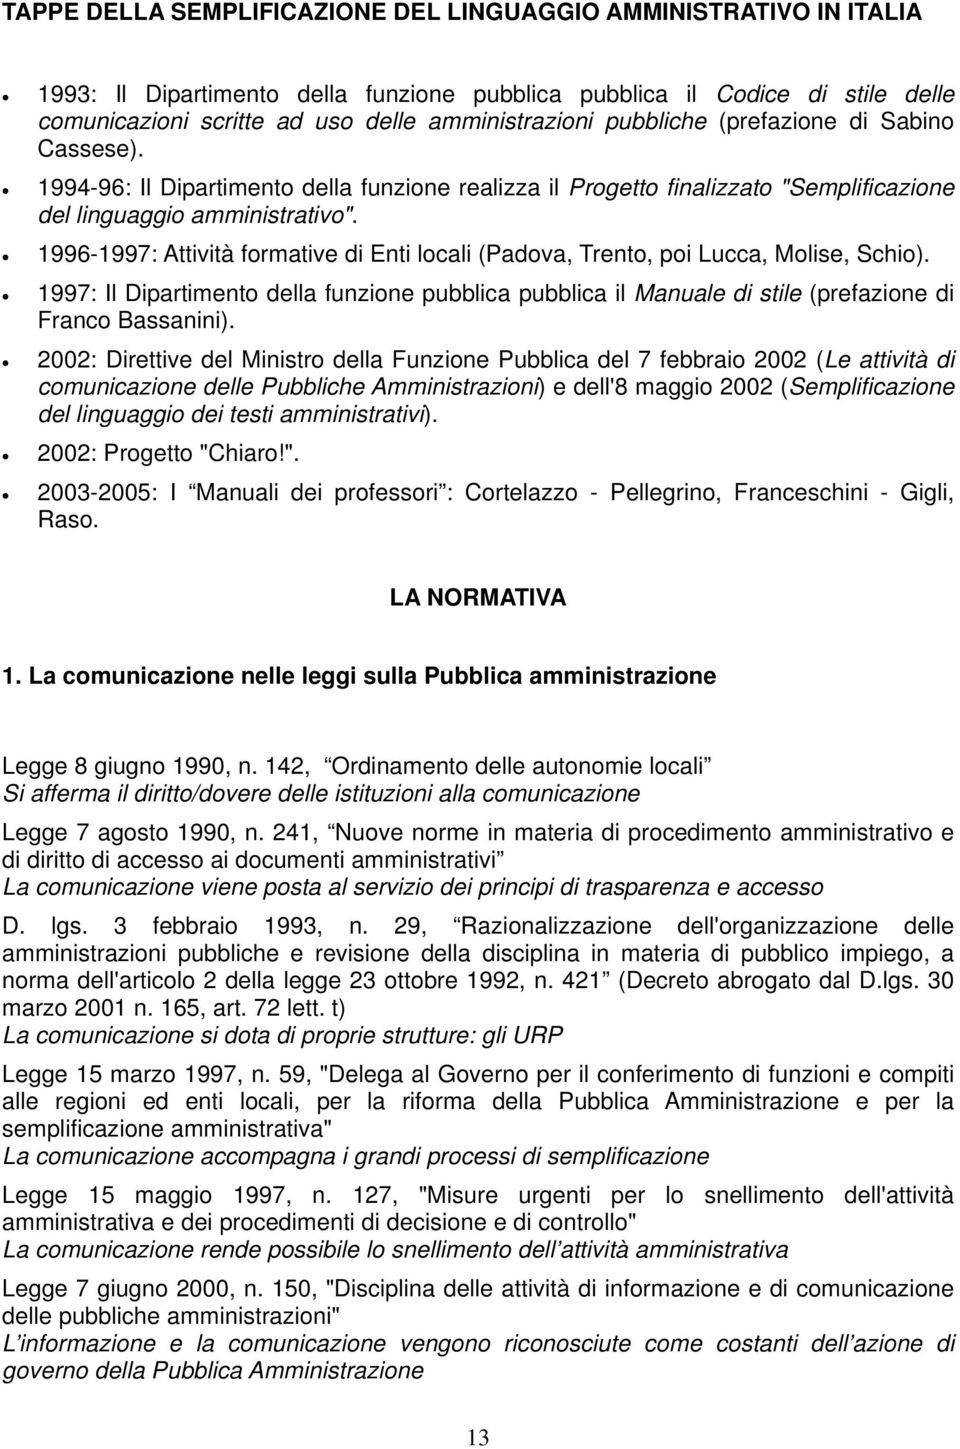 1996-1997: Attività formative di Enti locali (Padova, Trento, poi Lucca, Molise, Schio). 1997: Il Dipartimento della funzione pubblica pubblica il Manuale di stile (prefazione di Franco Bassanini).